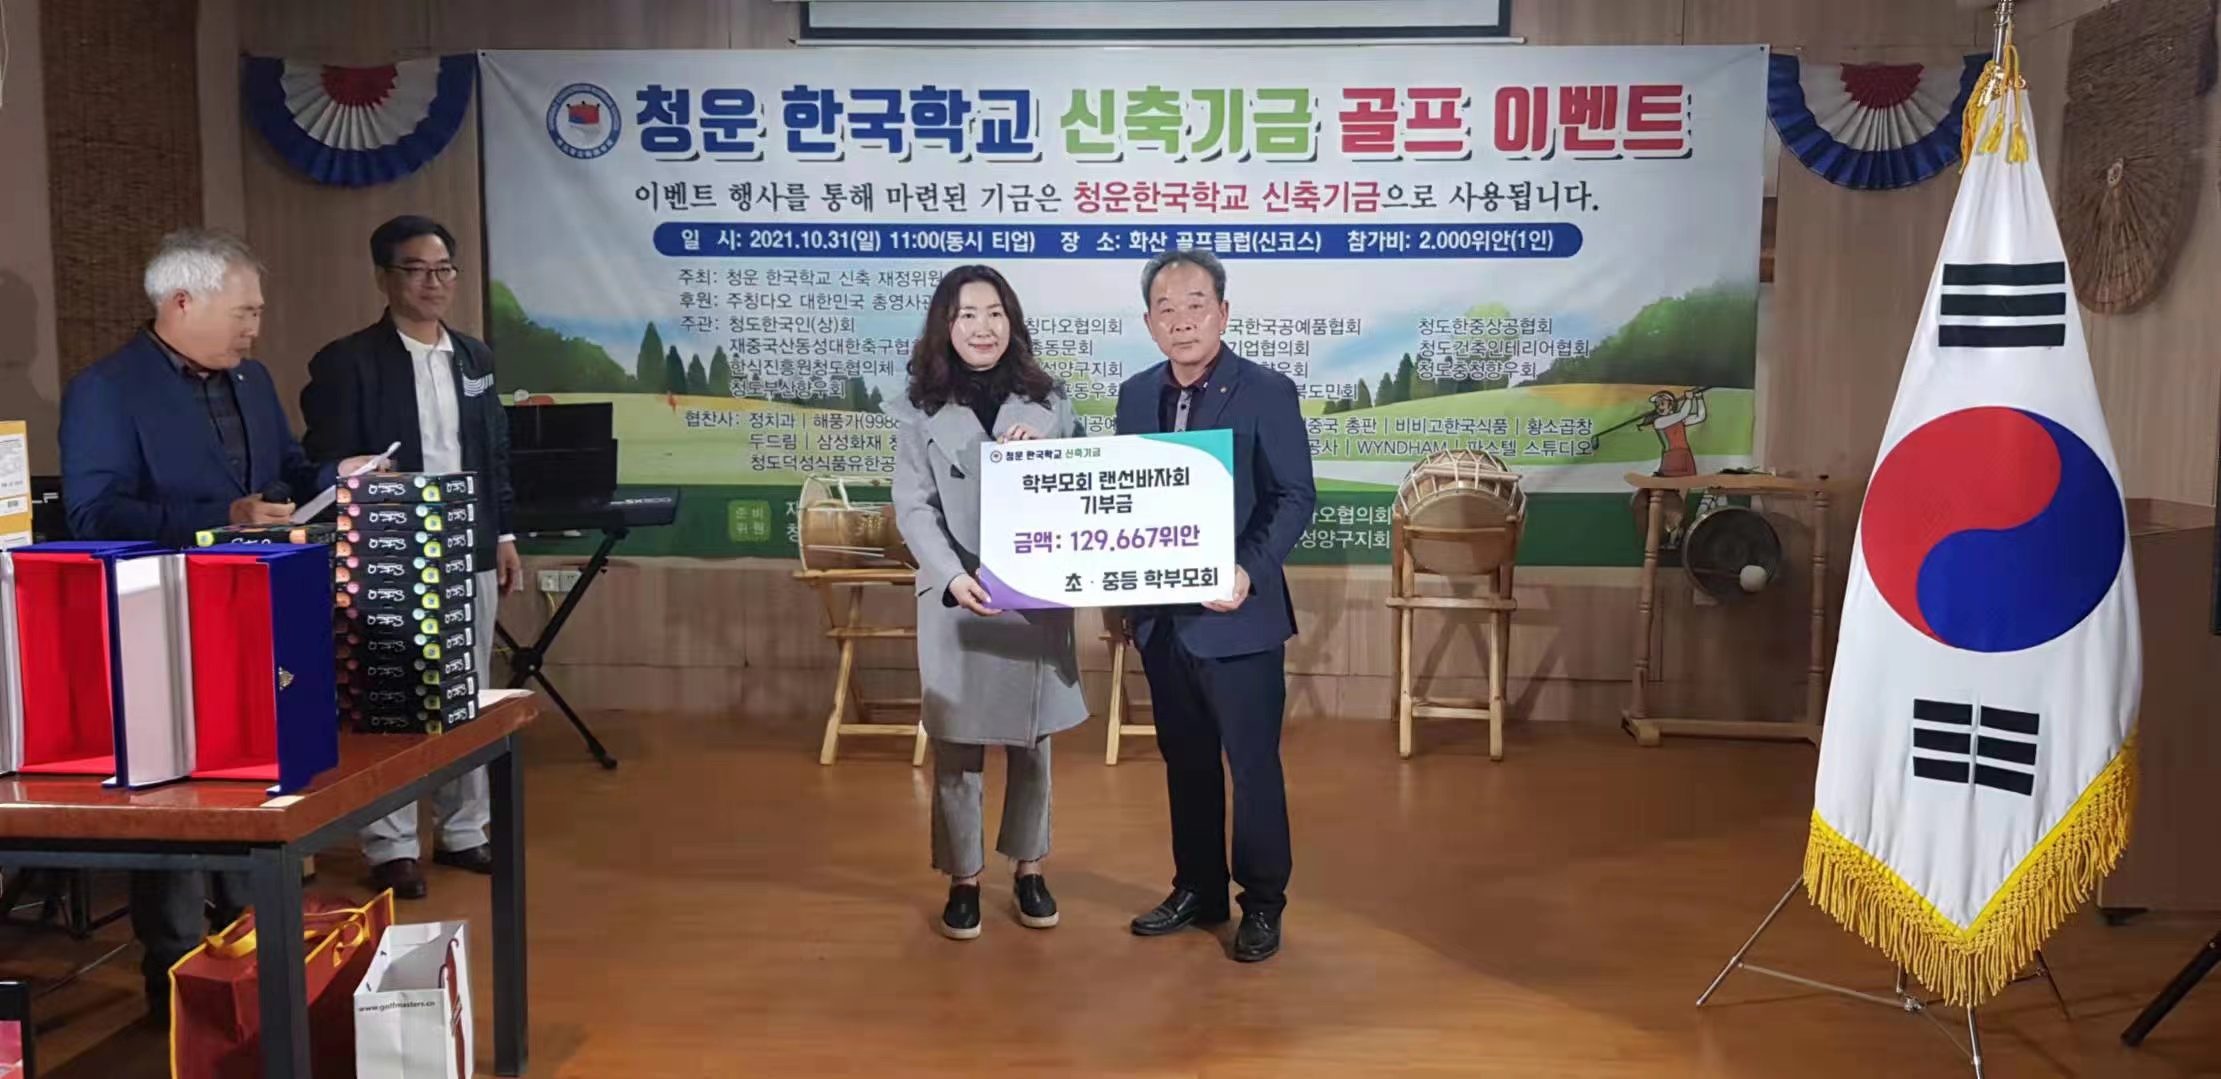 Родители, которые доставляют выручку от онлайн-базара (предоставлено Корейской школой Чунгун)